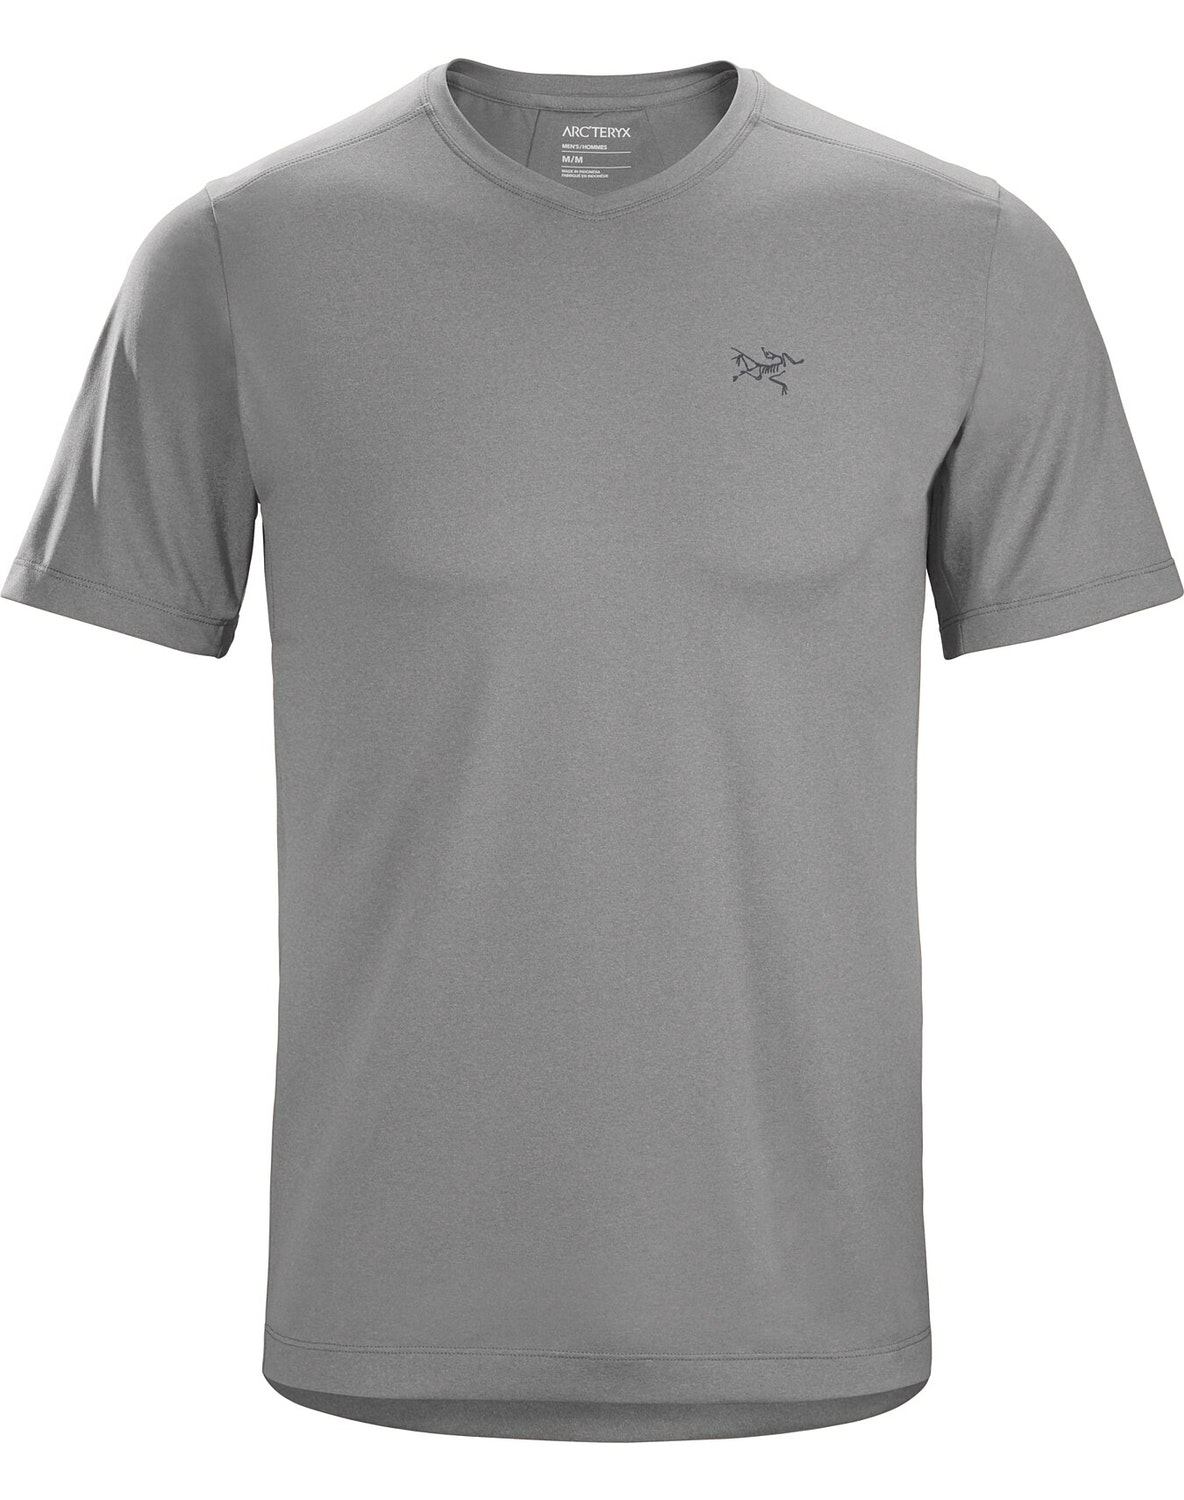 T-shirt Arc'teryx Remige Word Uomo Grigie - IT-59736153